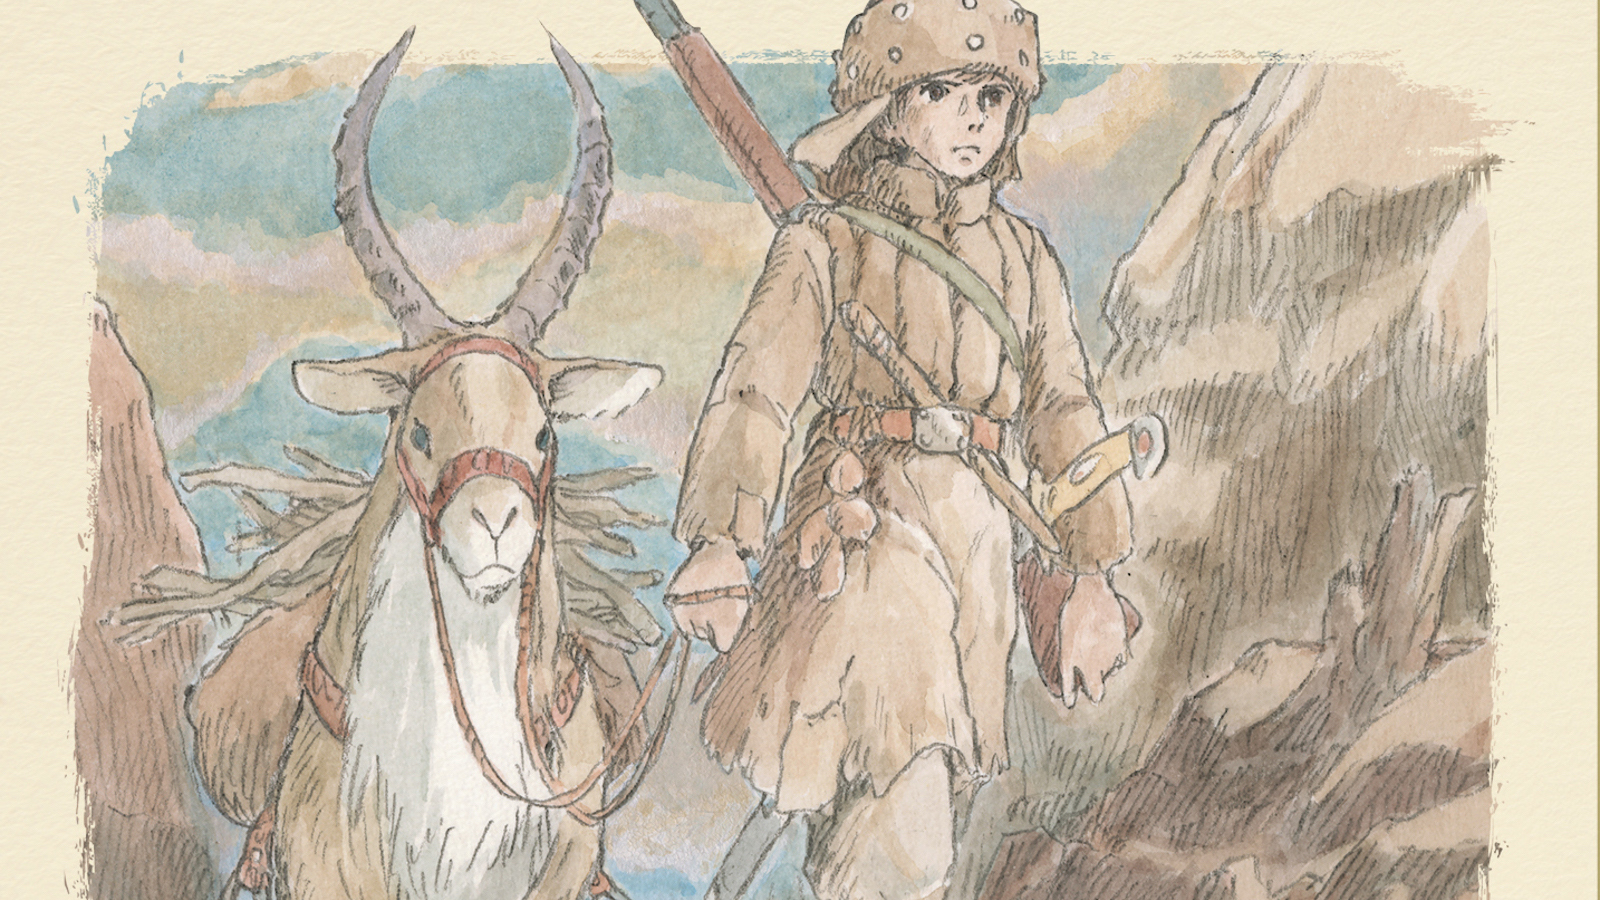 Il viaggio di Shuna, la recensione: la magia delle opere di Hayao Miyazaki vive anche su carta